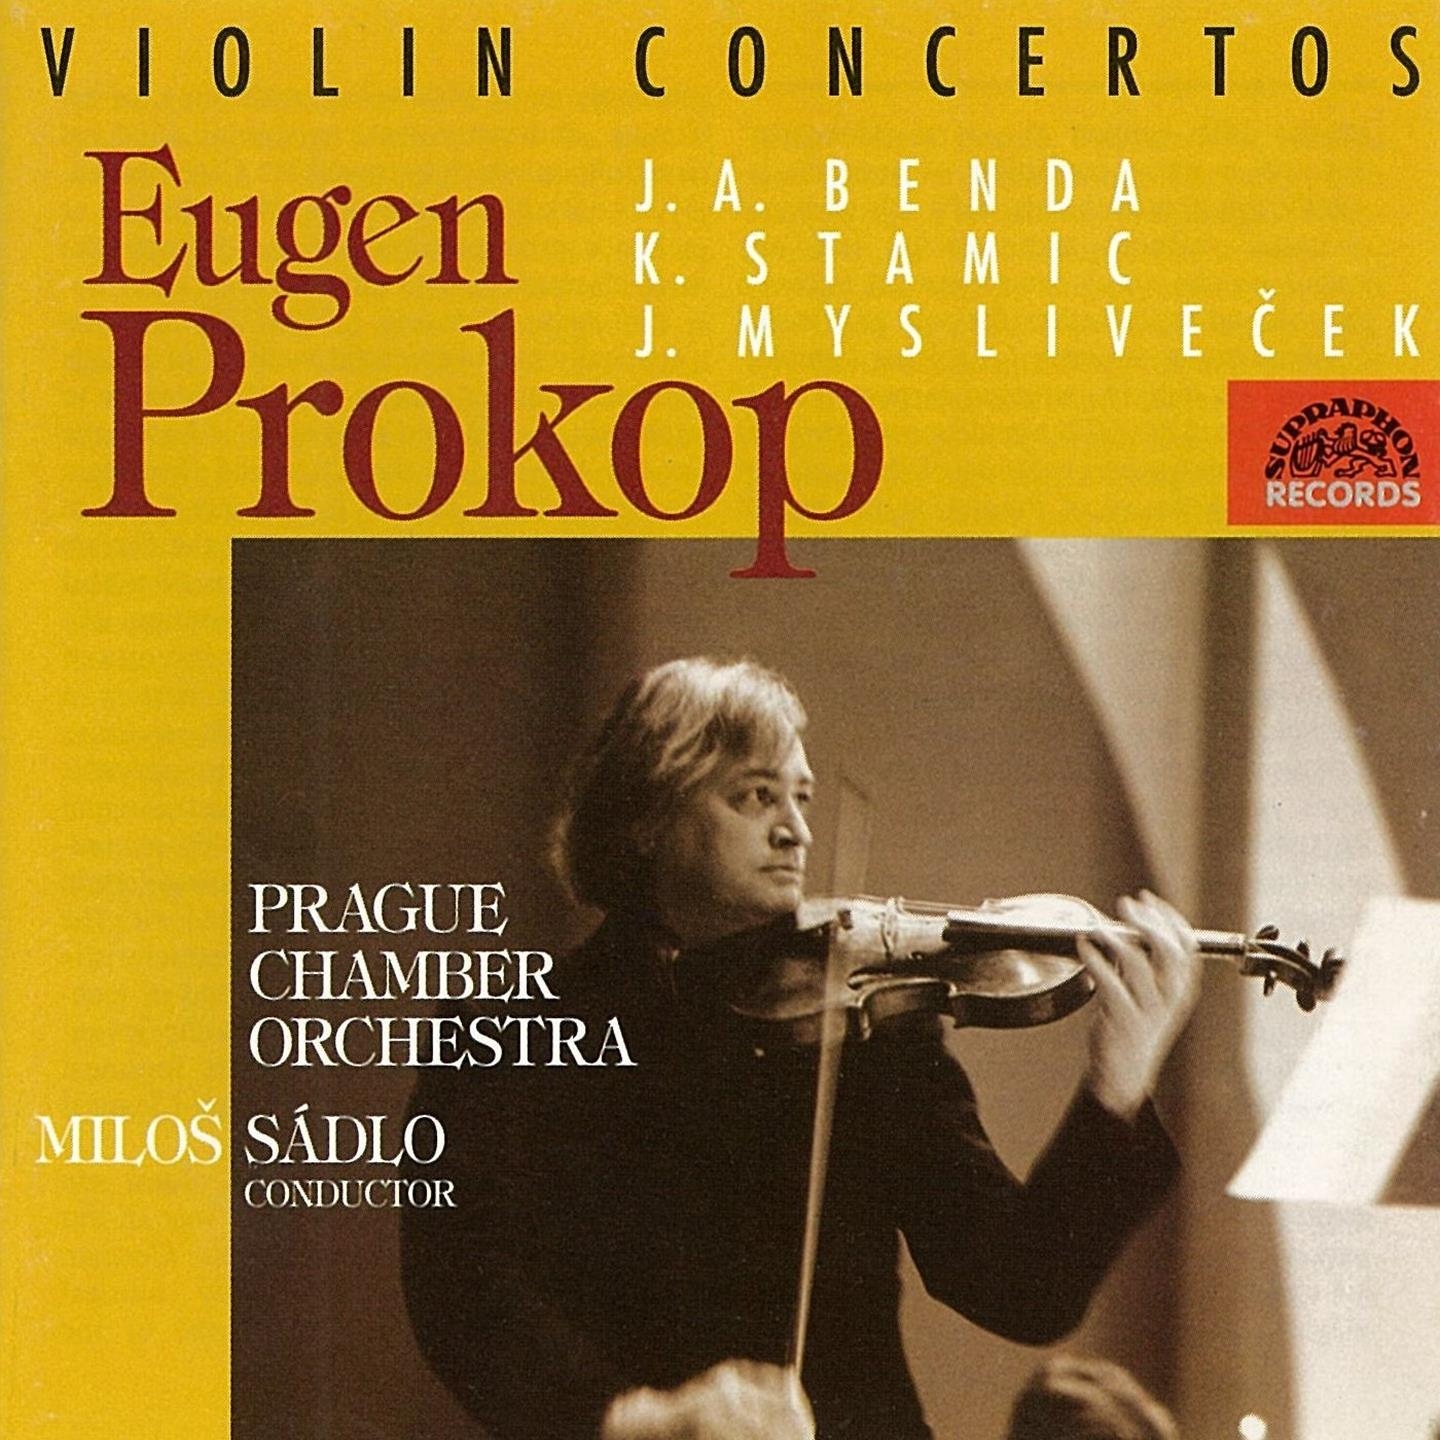 Concerto for Violin and Orchestra in B-Flat Major, .: III. Allegro presto